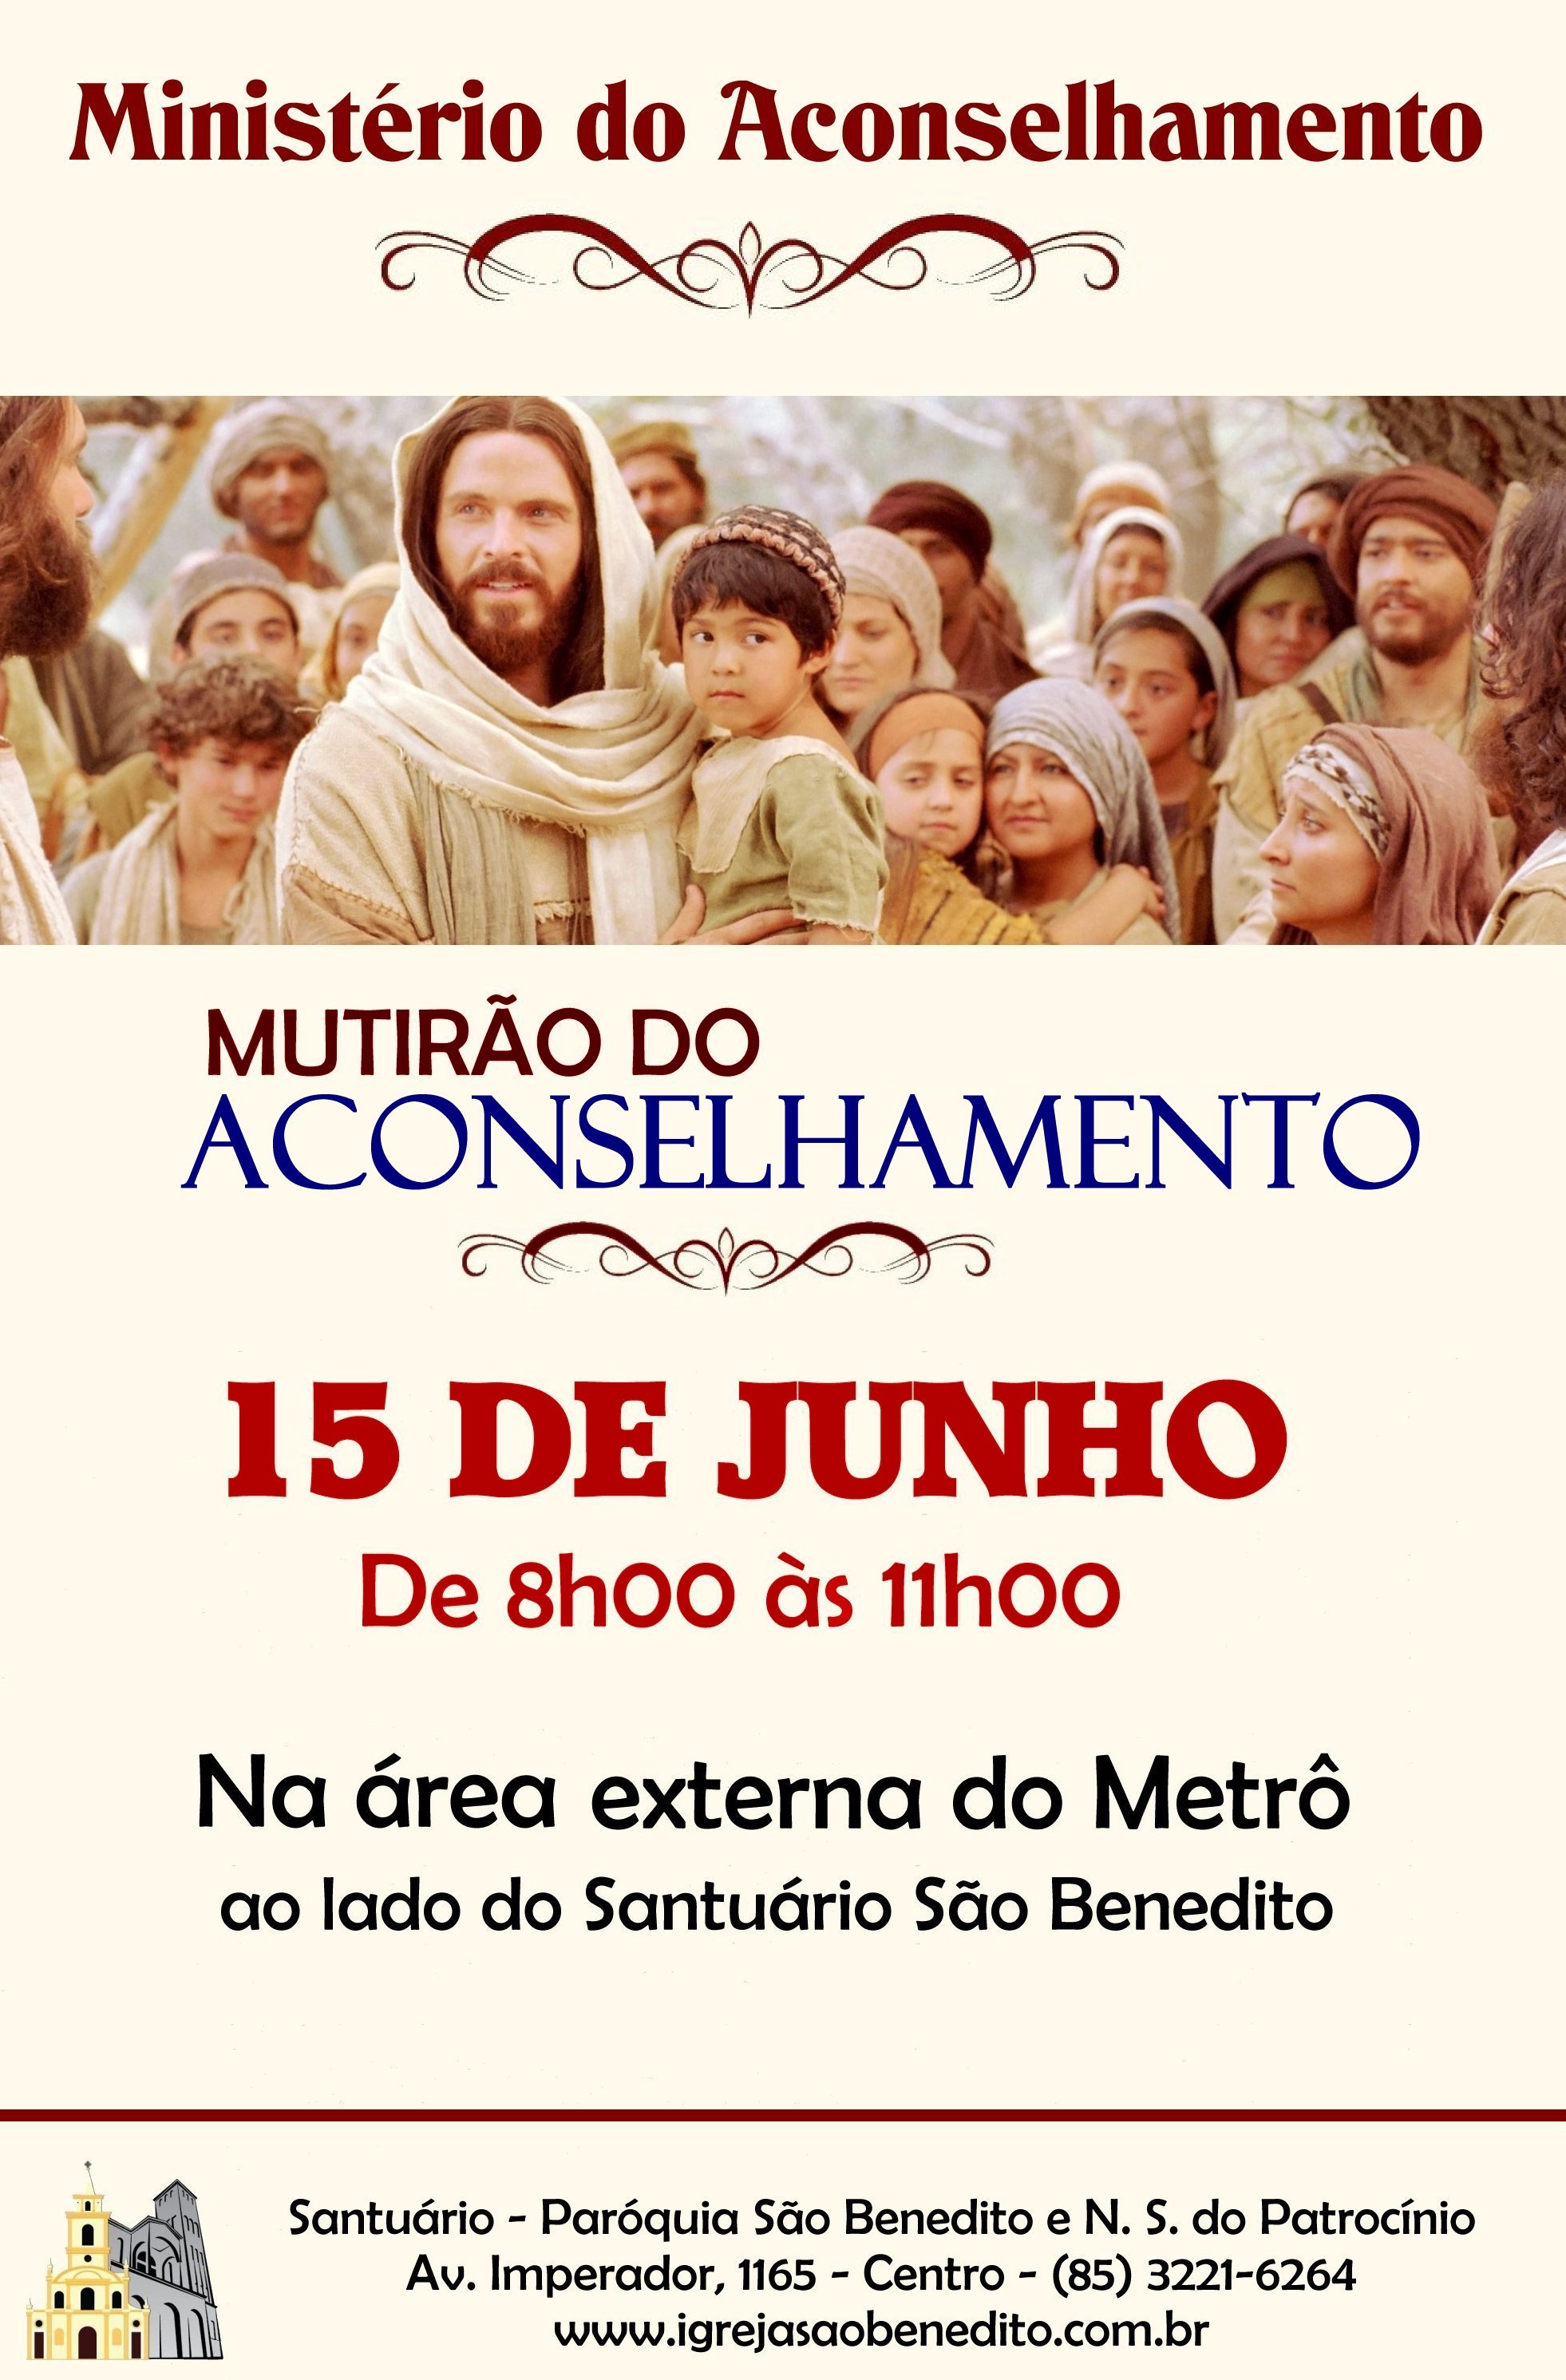 Paróquia São Benedito realizará o Mutirão do Aconselhamento dia 15/06. Participe!